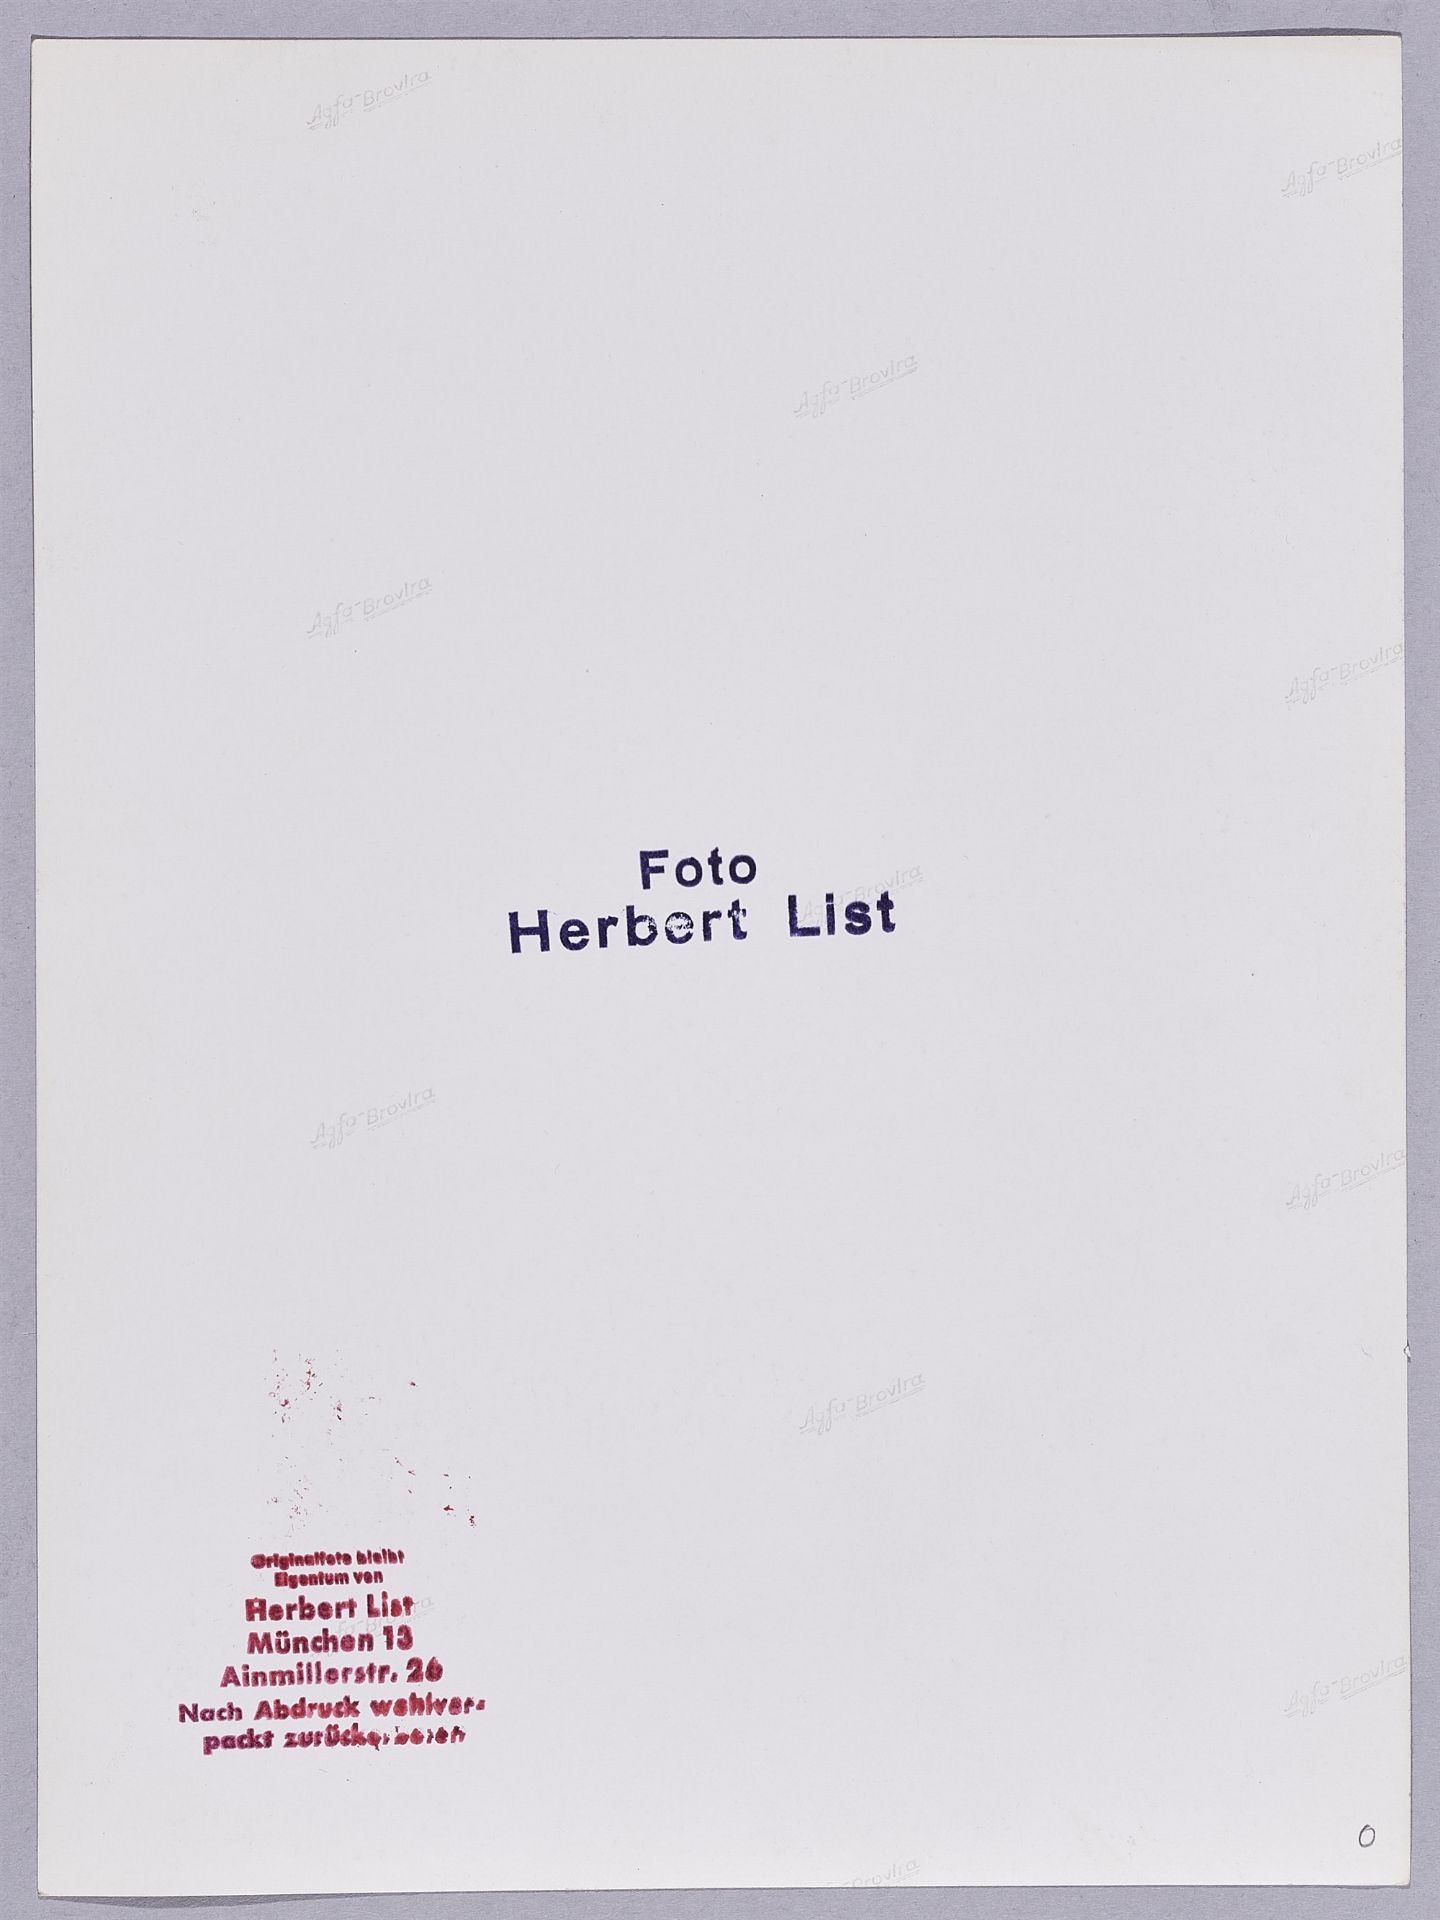 Herbert List, Ohne Titel - Bild 2 aus 2